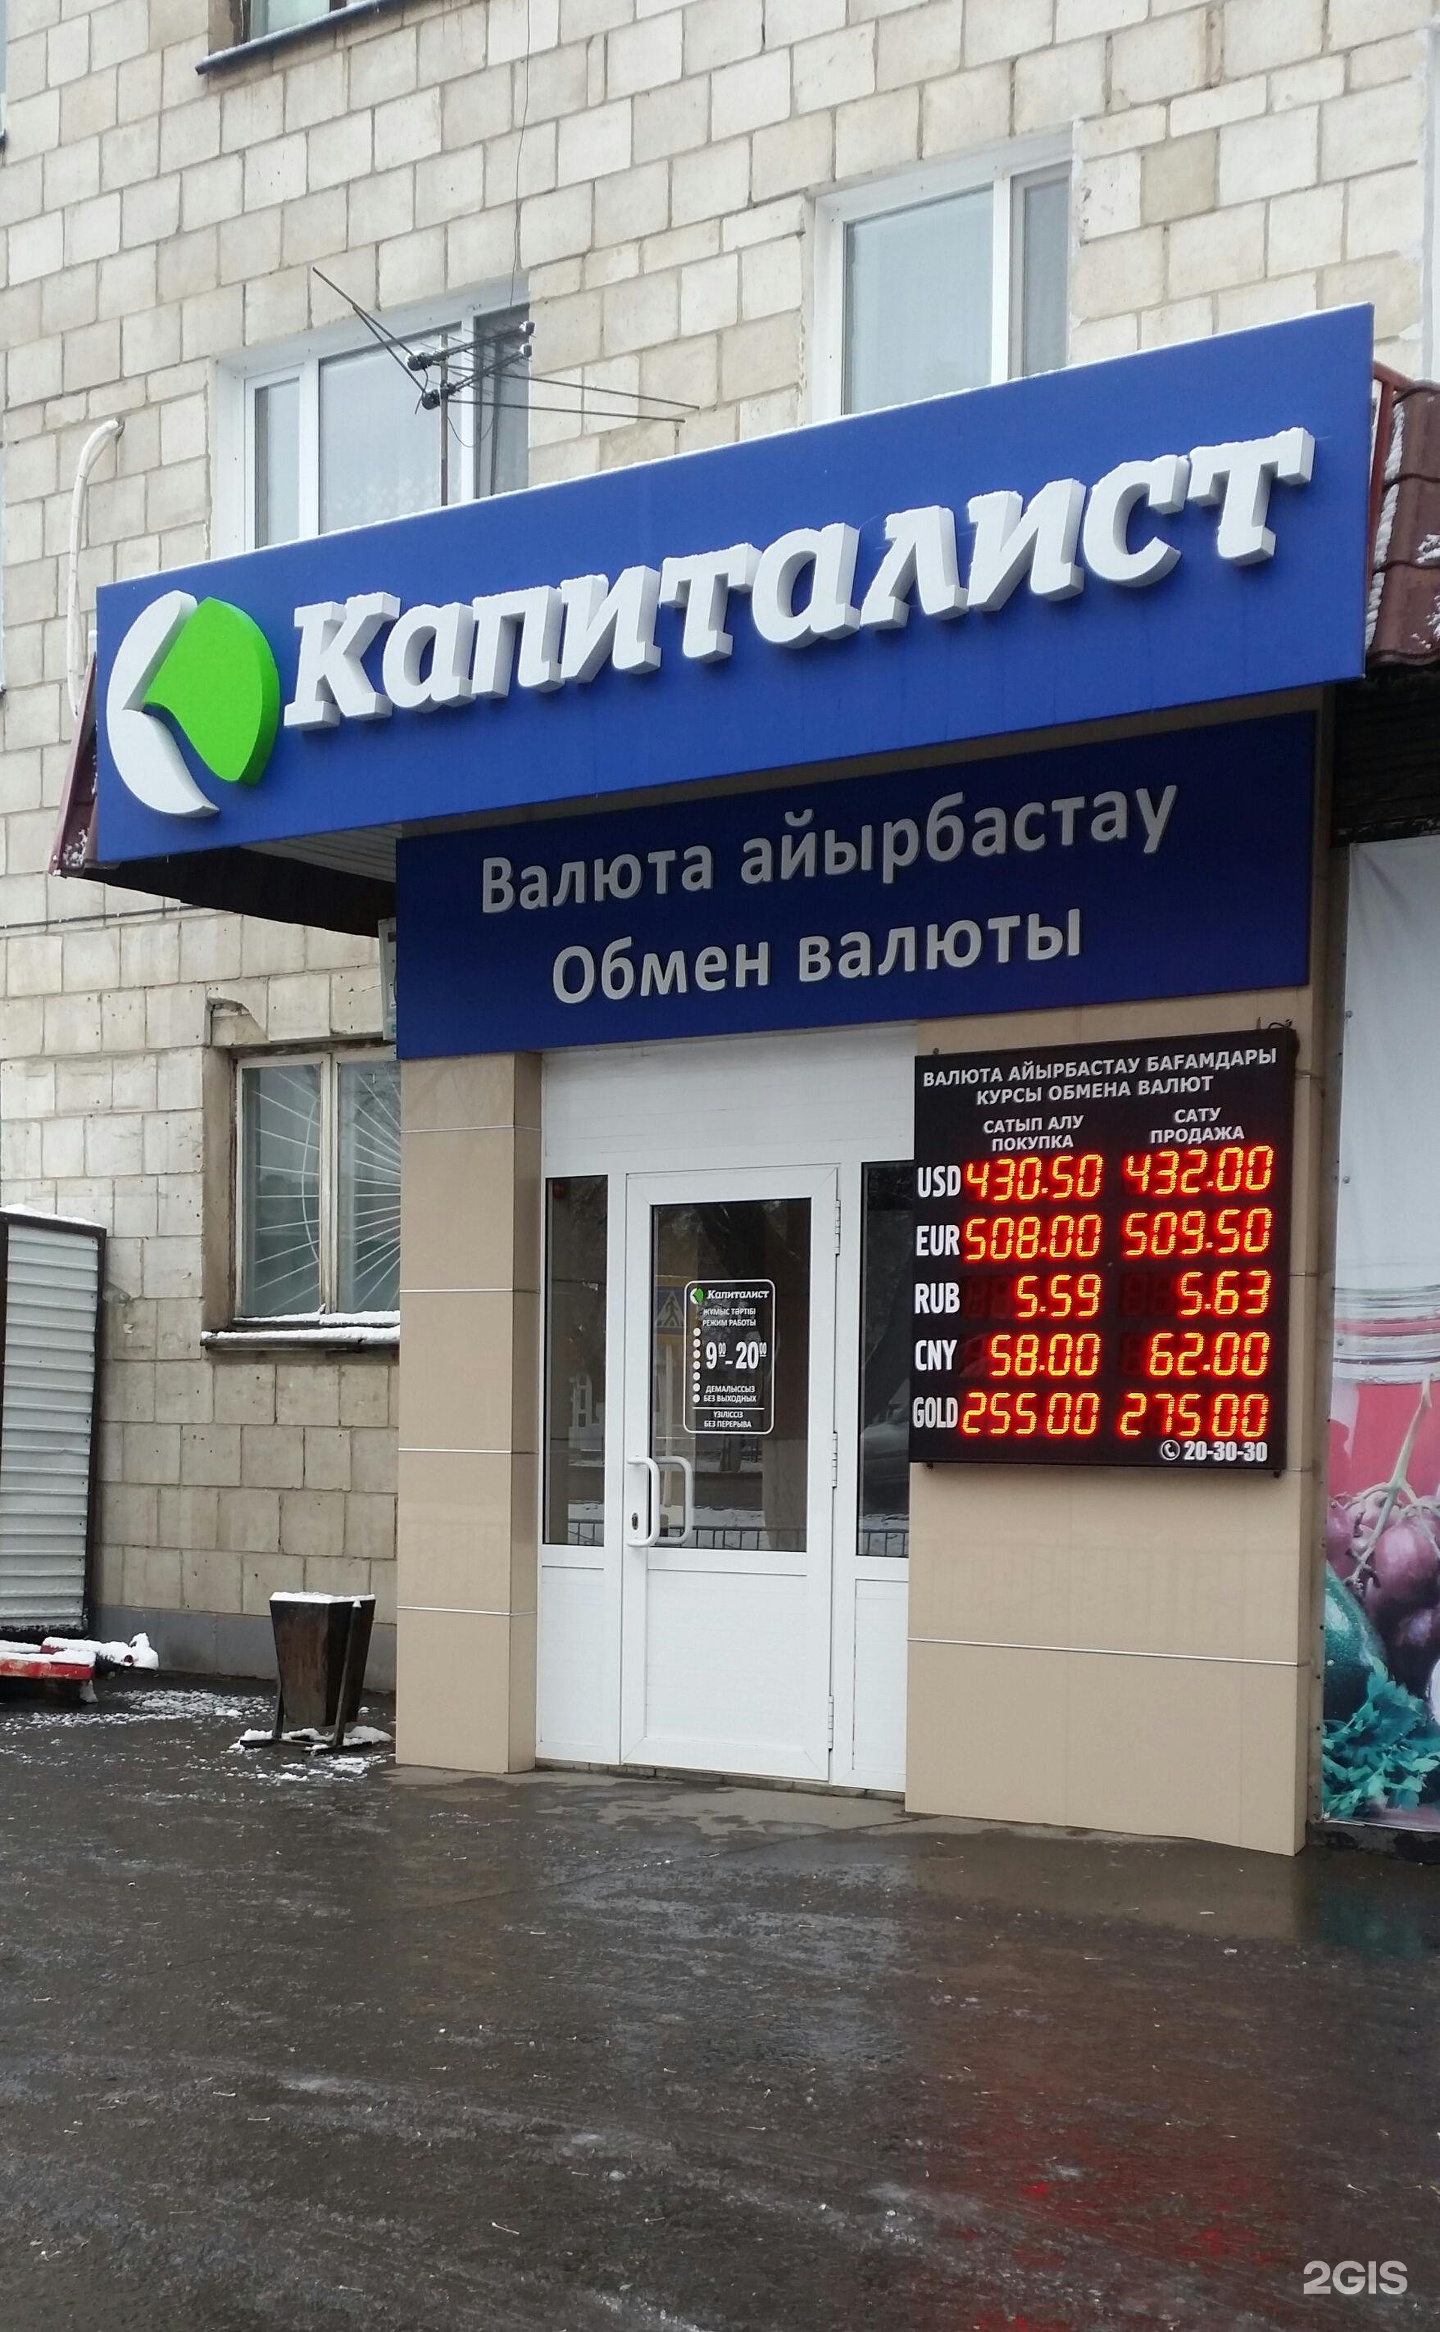 Павлодар валюта обмен взимается ли комиссия за обмен валюты